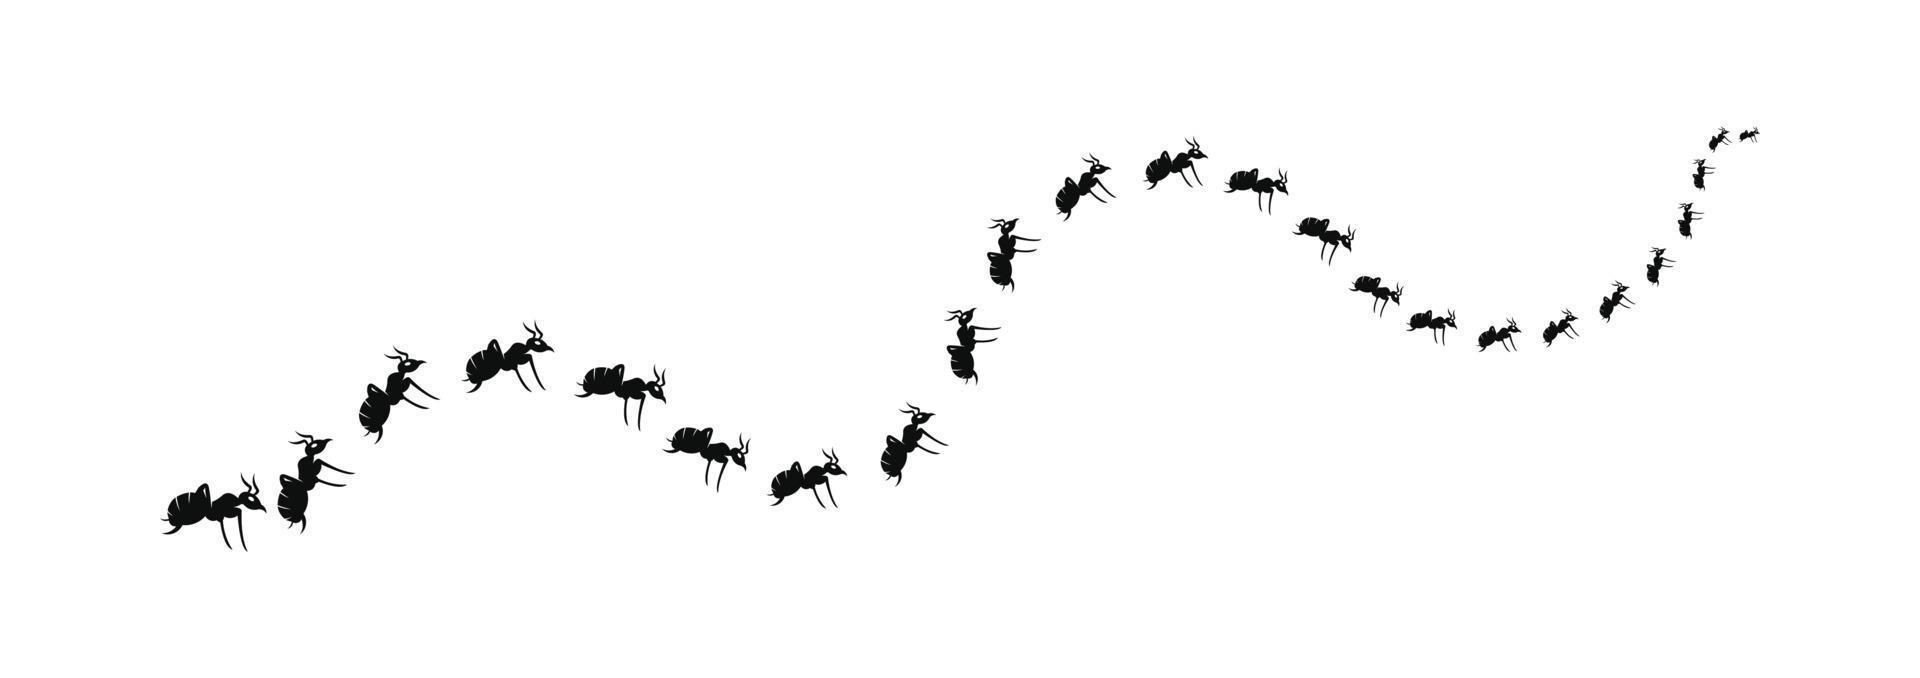 una hilera de hormigas obreras marchando en busca de comida.hormigas obreras marchando en hilera. Ilustración de vector de carretera de hormigas